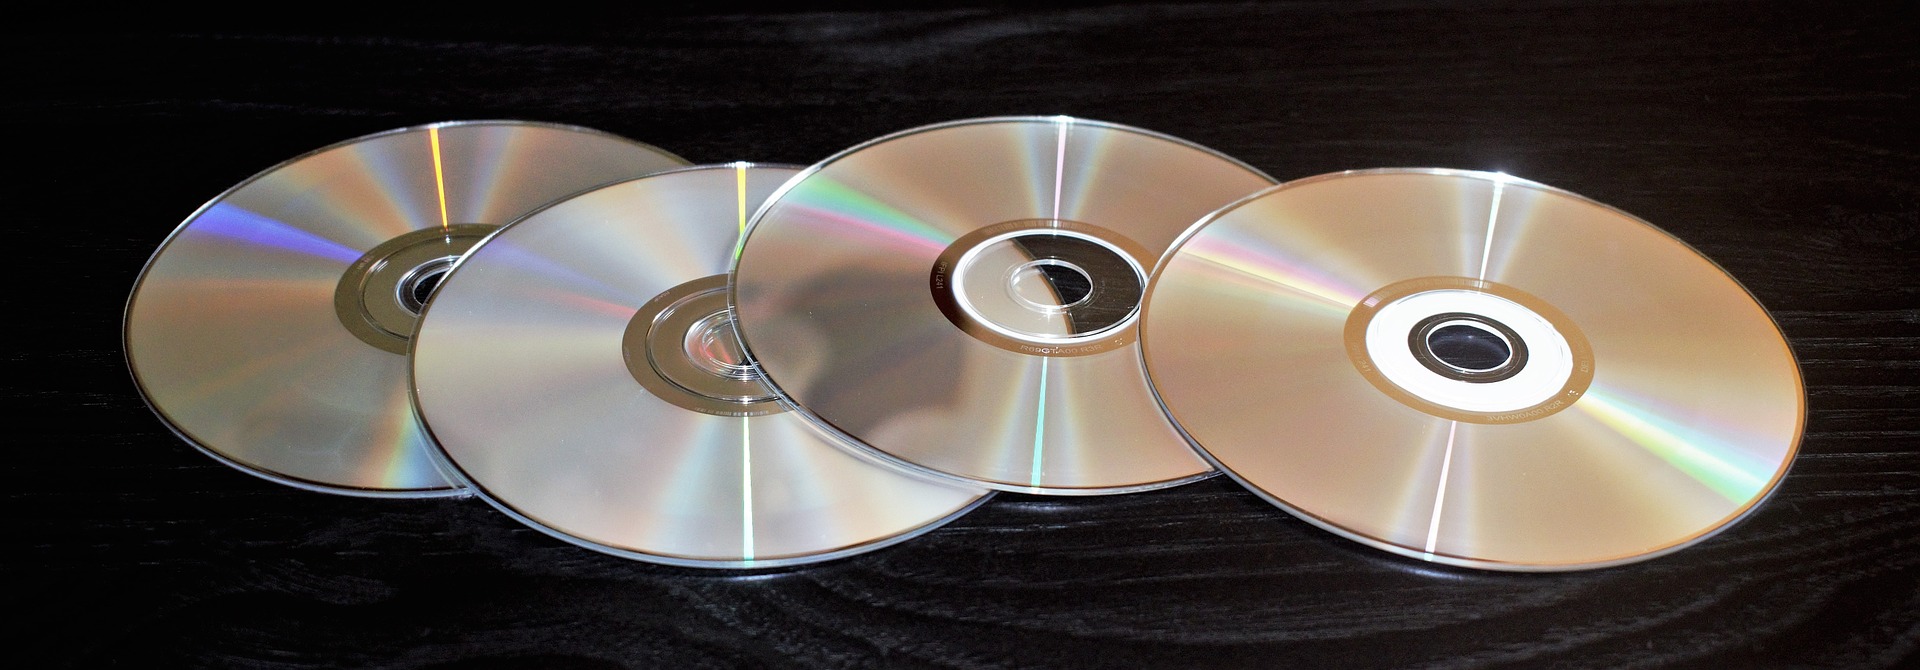 Jak na vypalování dat na CD/DVD